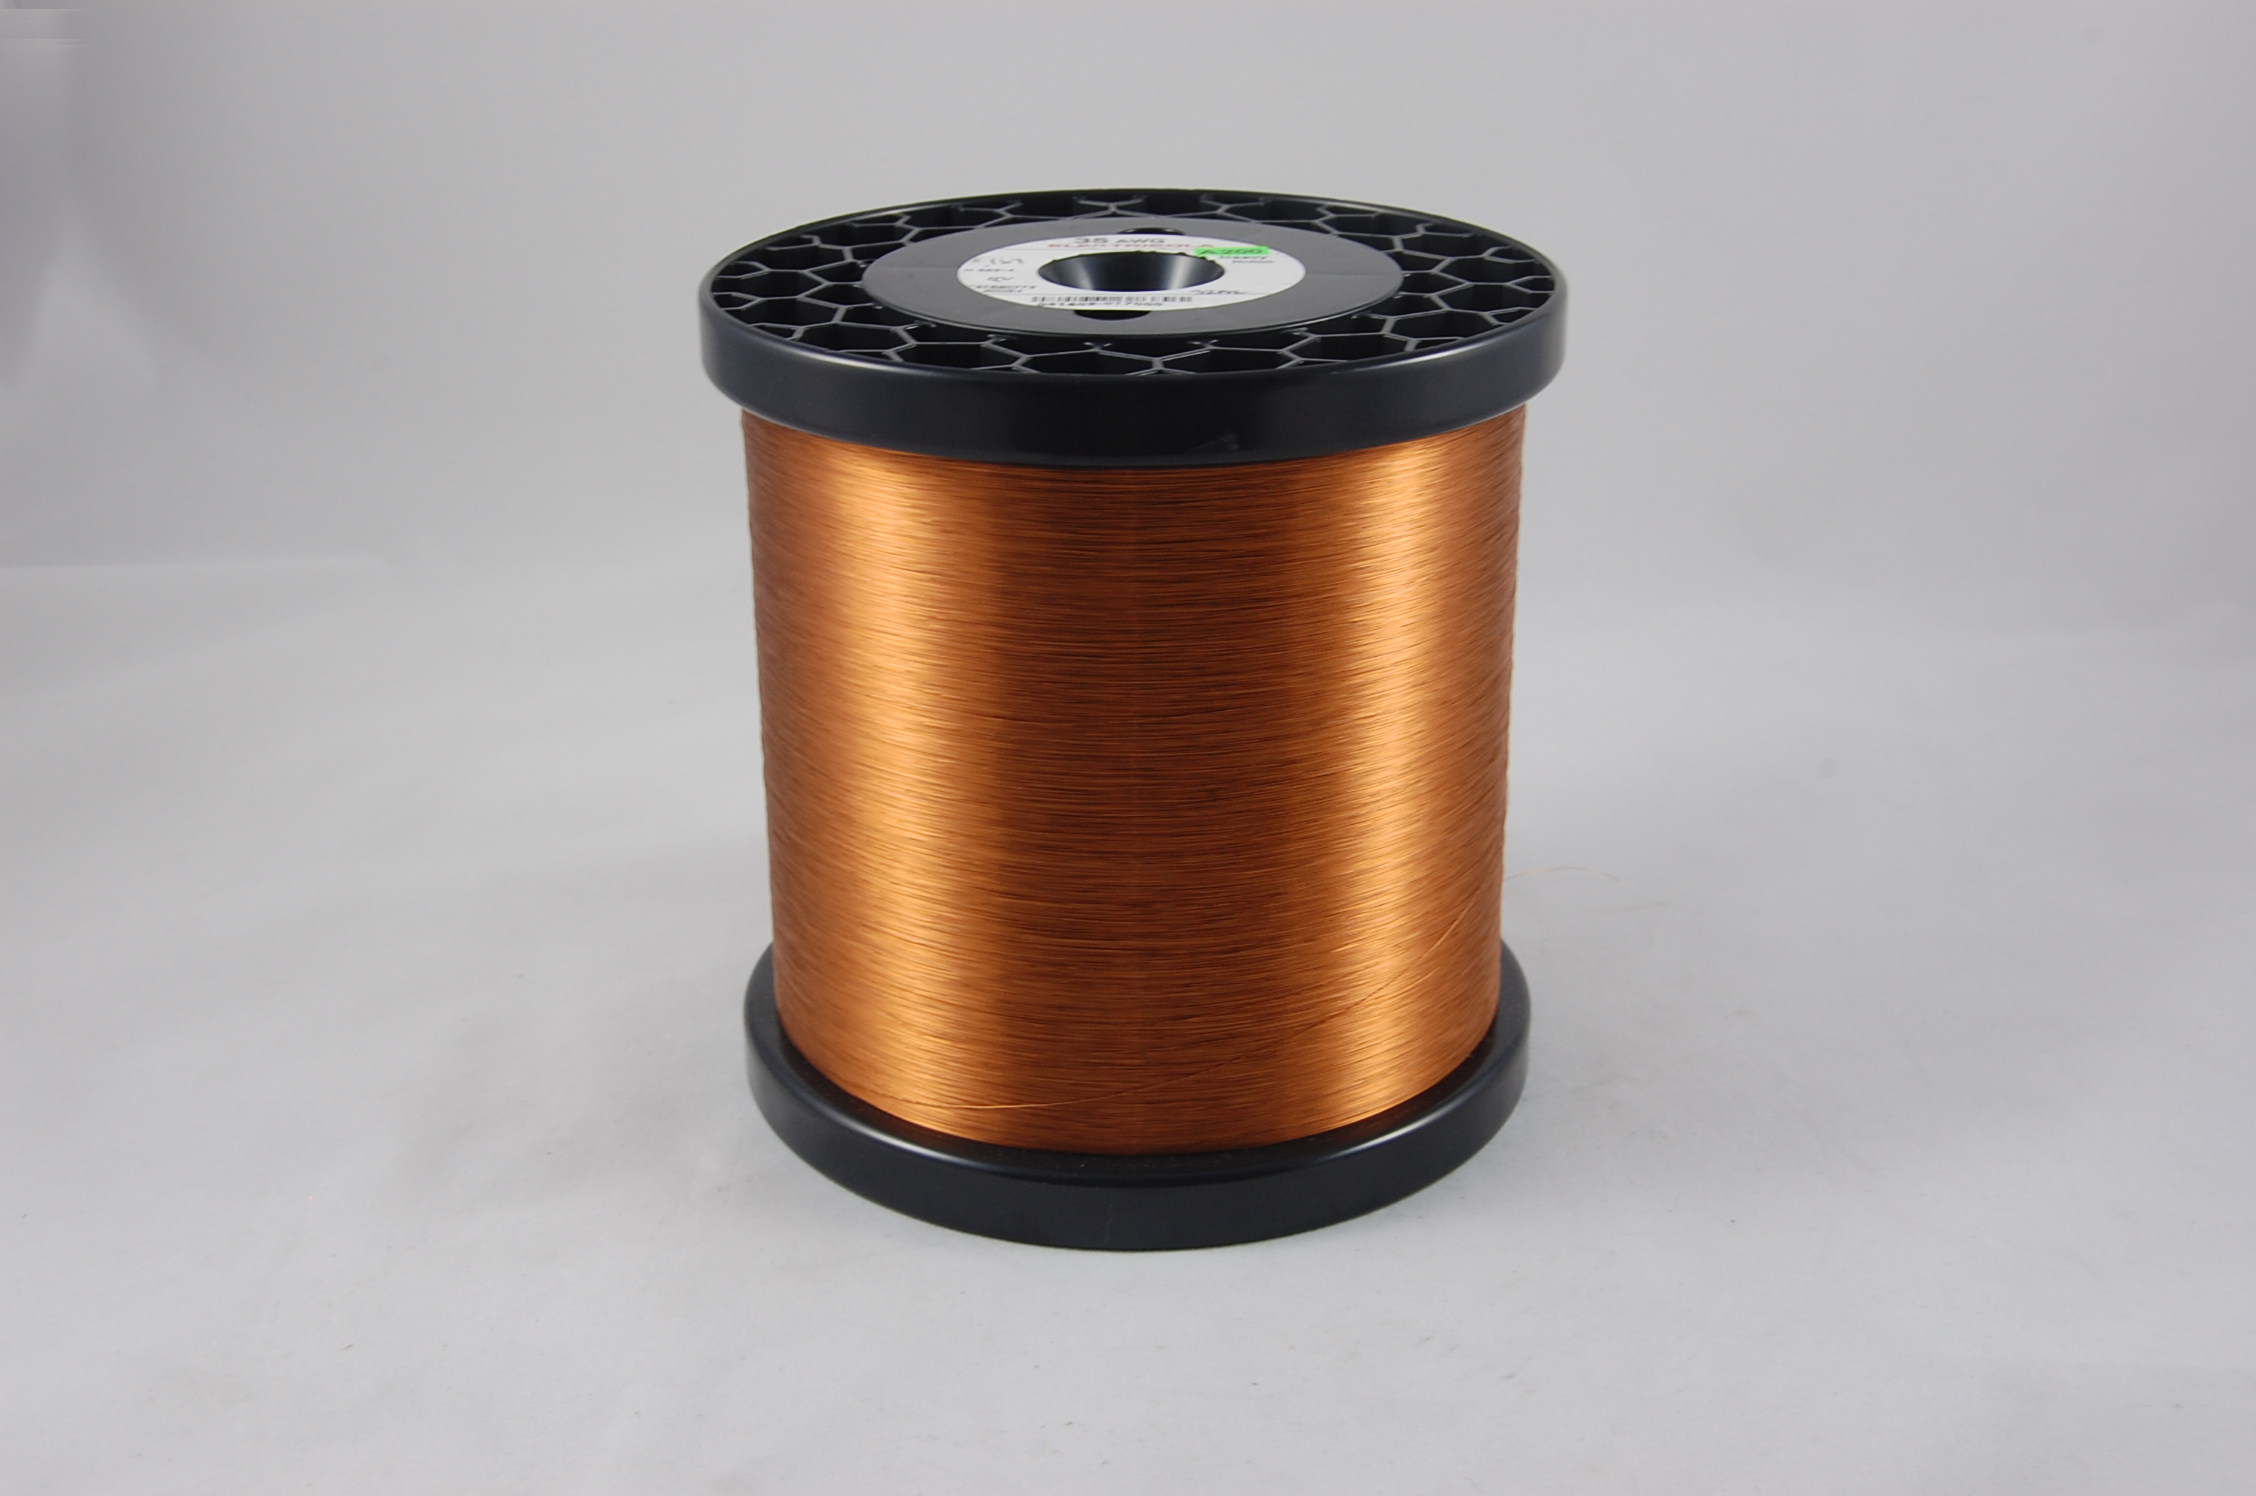 #36 Heavy Amidester 200 Round MW 74 Copper Magnet Wire 200°C, copper,  14 LB 6" x 6" spool (average wght.)